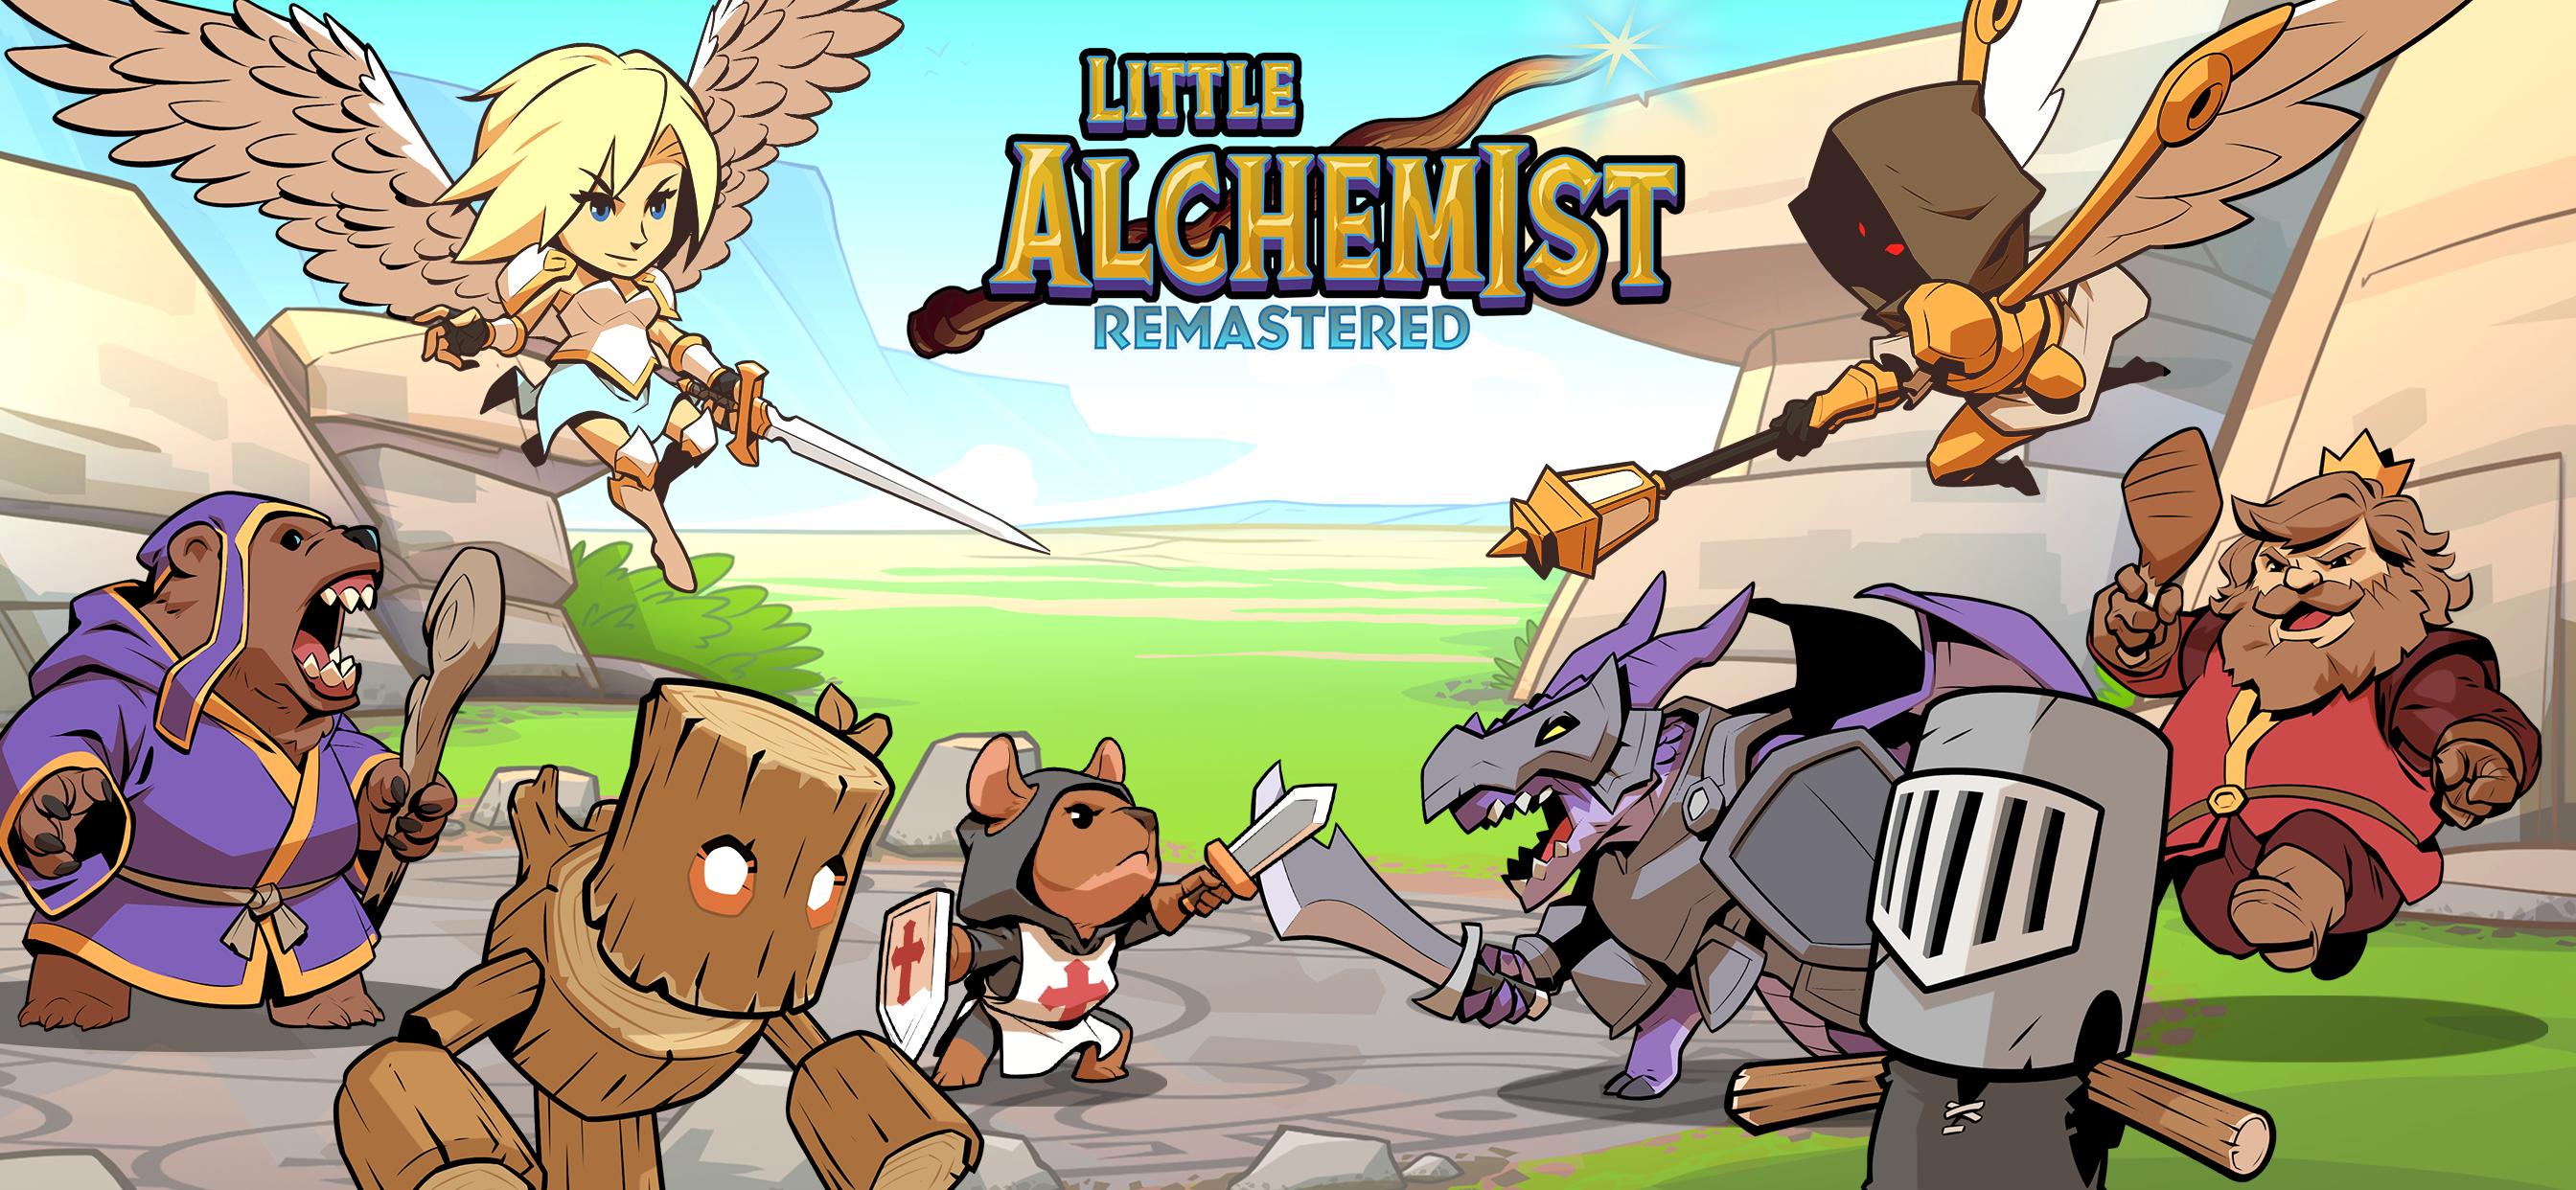 Litle alchemist remastered hack - Requests - GameGuardian